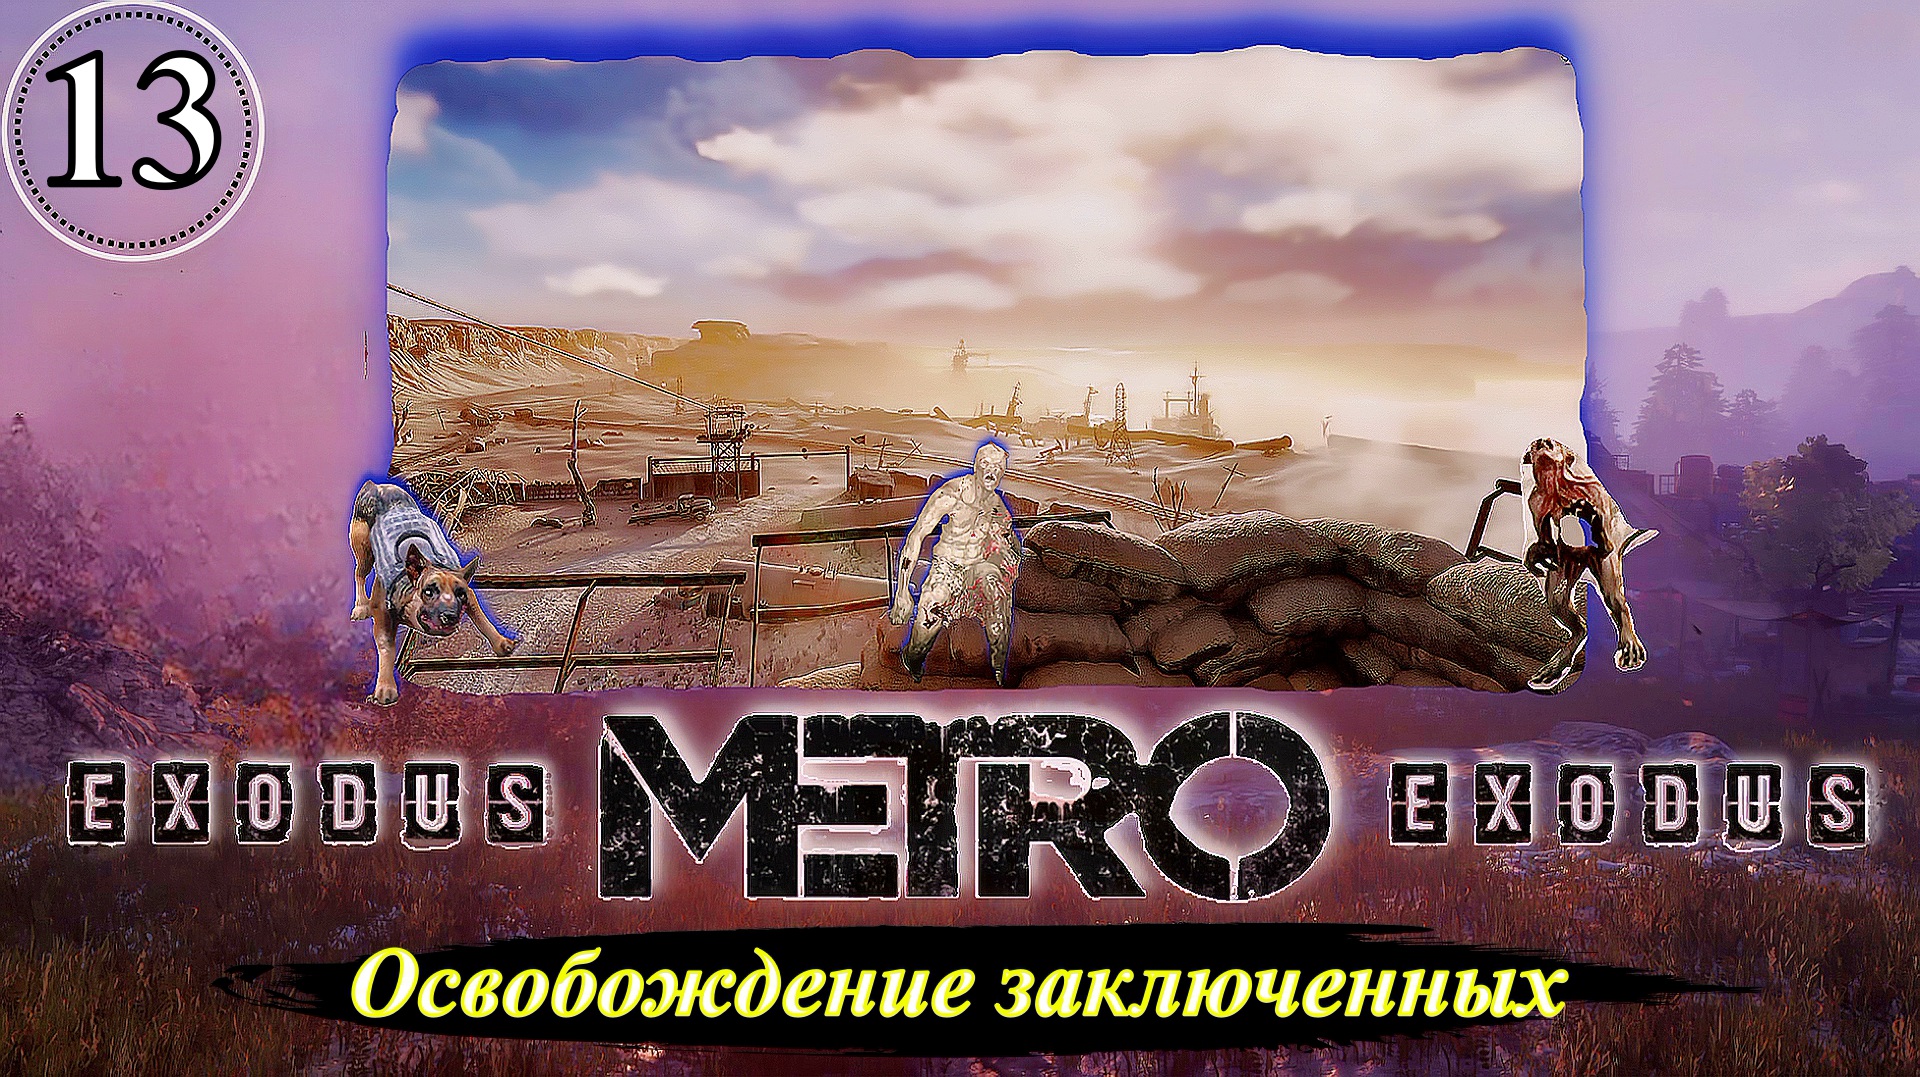 Metro Exodus Освобождение заключенных - Прохождение. Часть 13.mp4